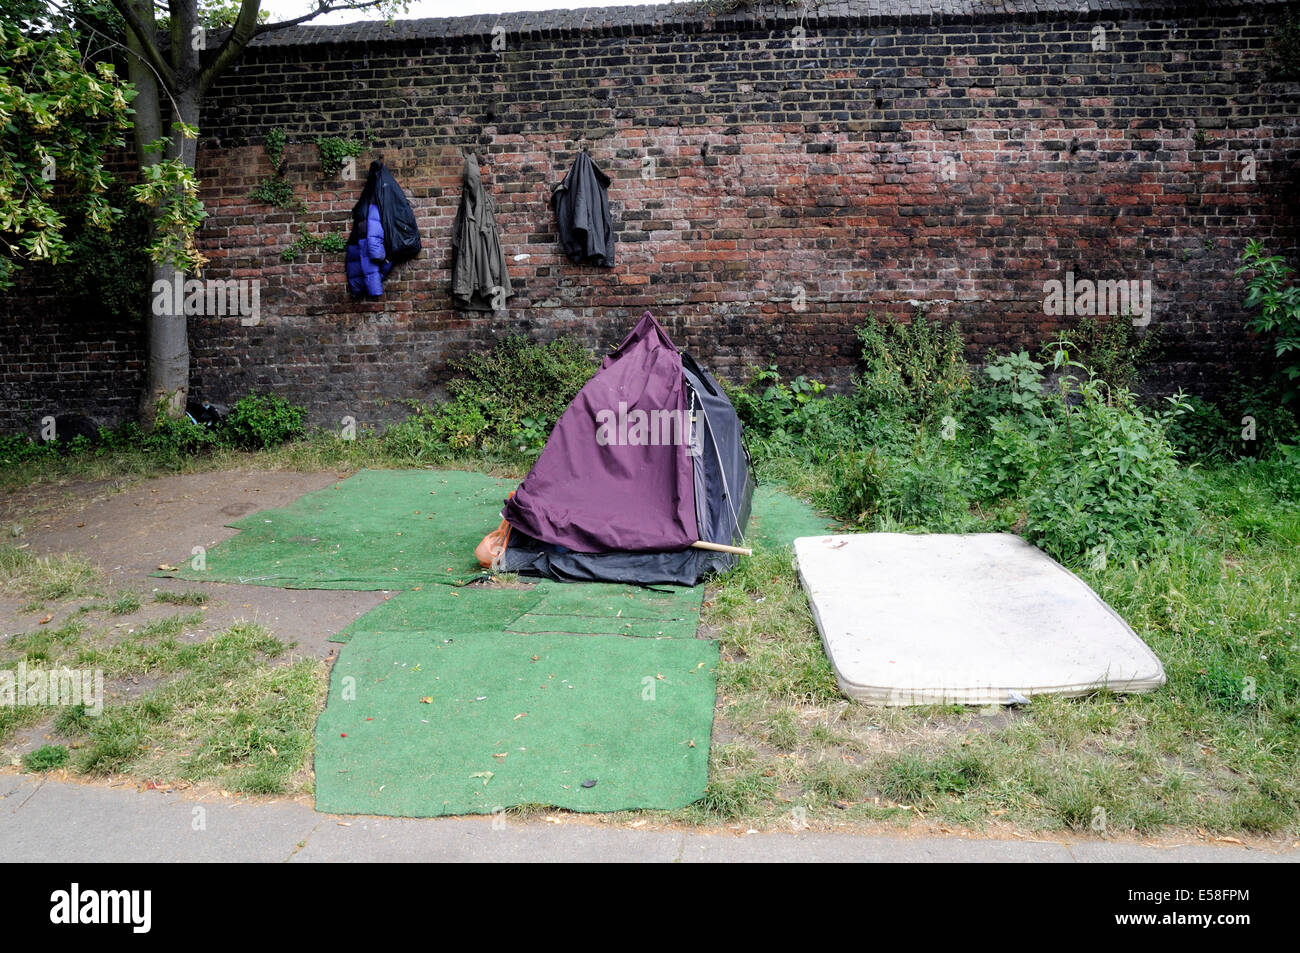 Las personas sin hogar tienda el camino de sirga de Regent's Cannal con abrigos de colgar en la pared detrás y alfombras y colchones alrededor, Londres Foto de stock